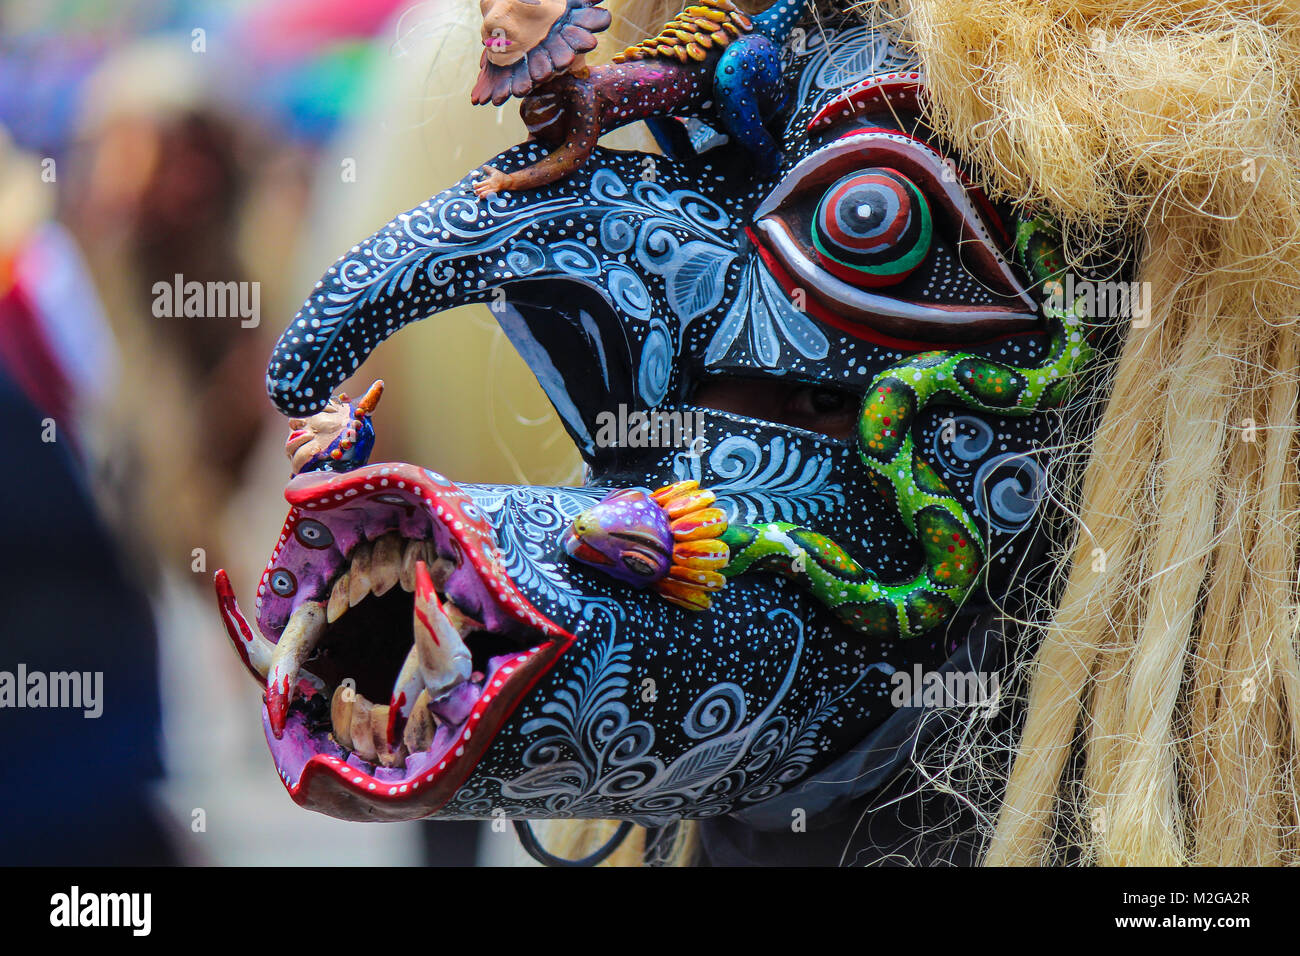 Terrificante e mostruoso nero e blu maschera del guerriero 'tastoan' con molti dipinti a mano di un tradizionale carnevale messicano Foto Stock